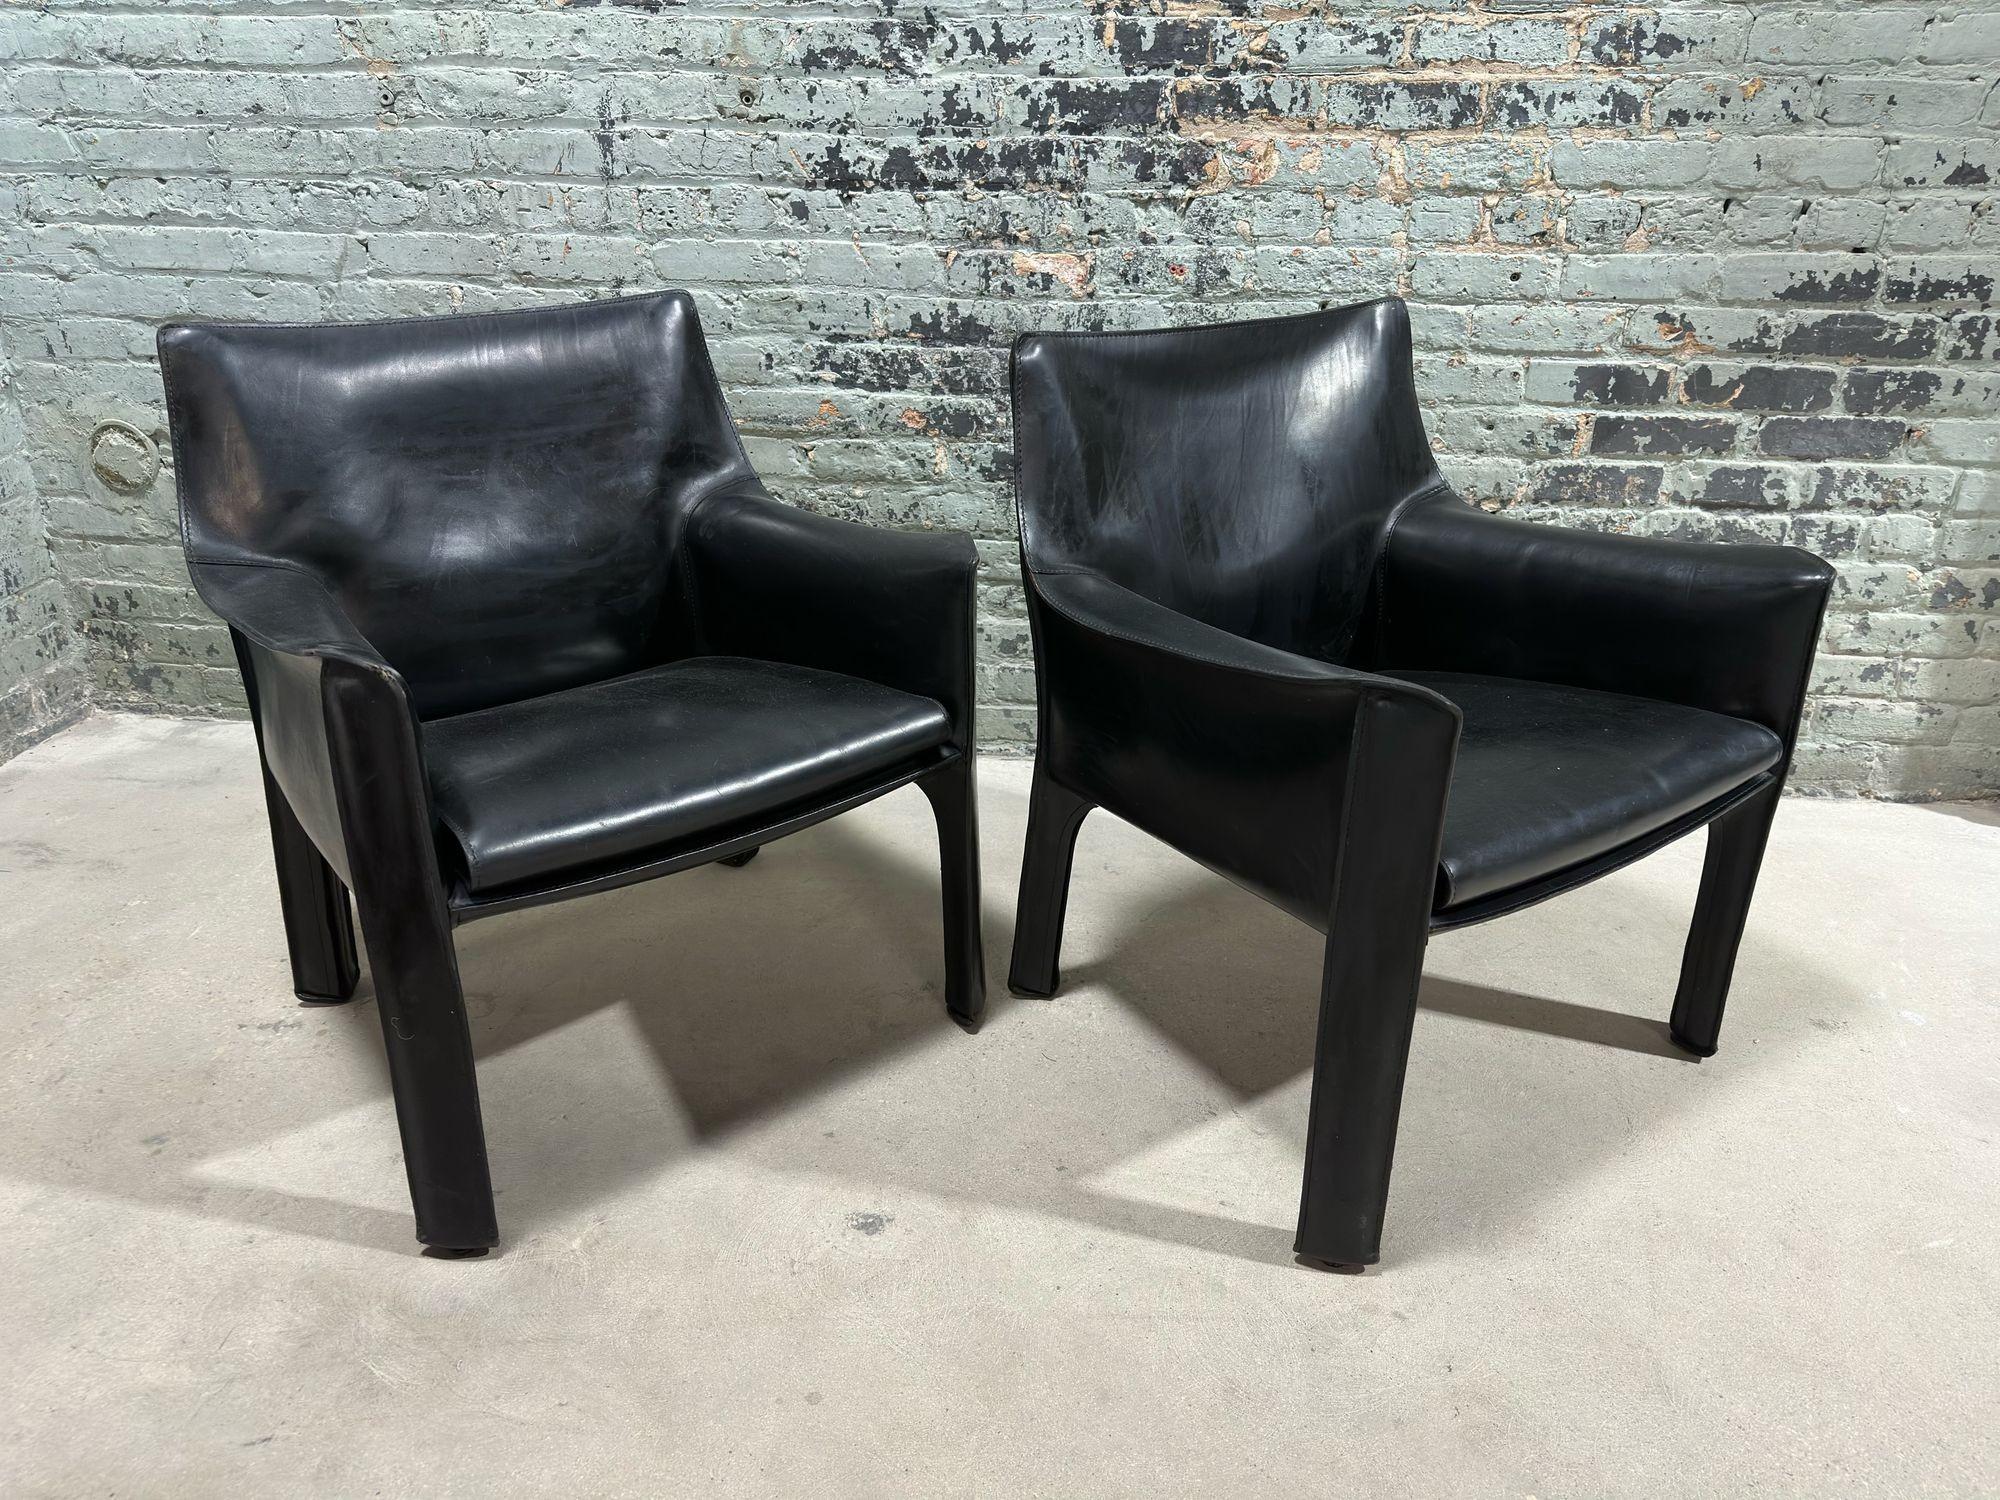 Paire de chaises cabines en cuir noir Mario Bellini, modèle 414 pour Cassina Italie, années 1980.
Les chaises sont construites avec des cadres en acier tubulaire et un cuir de selle épais. Le cuir est maintenu en place par des fermetures à glissière